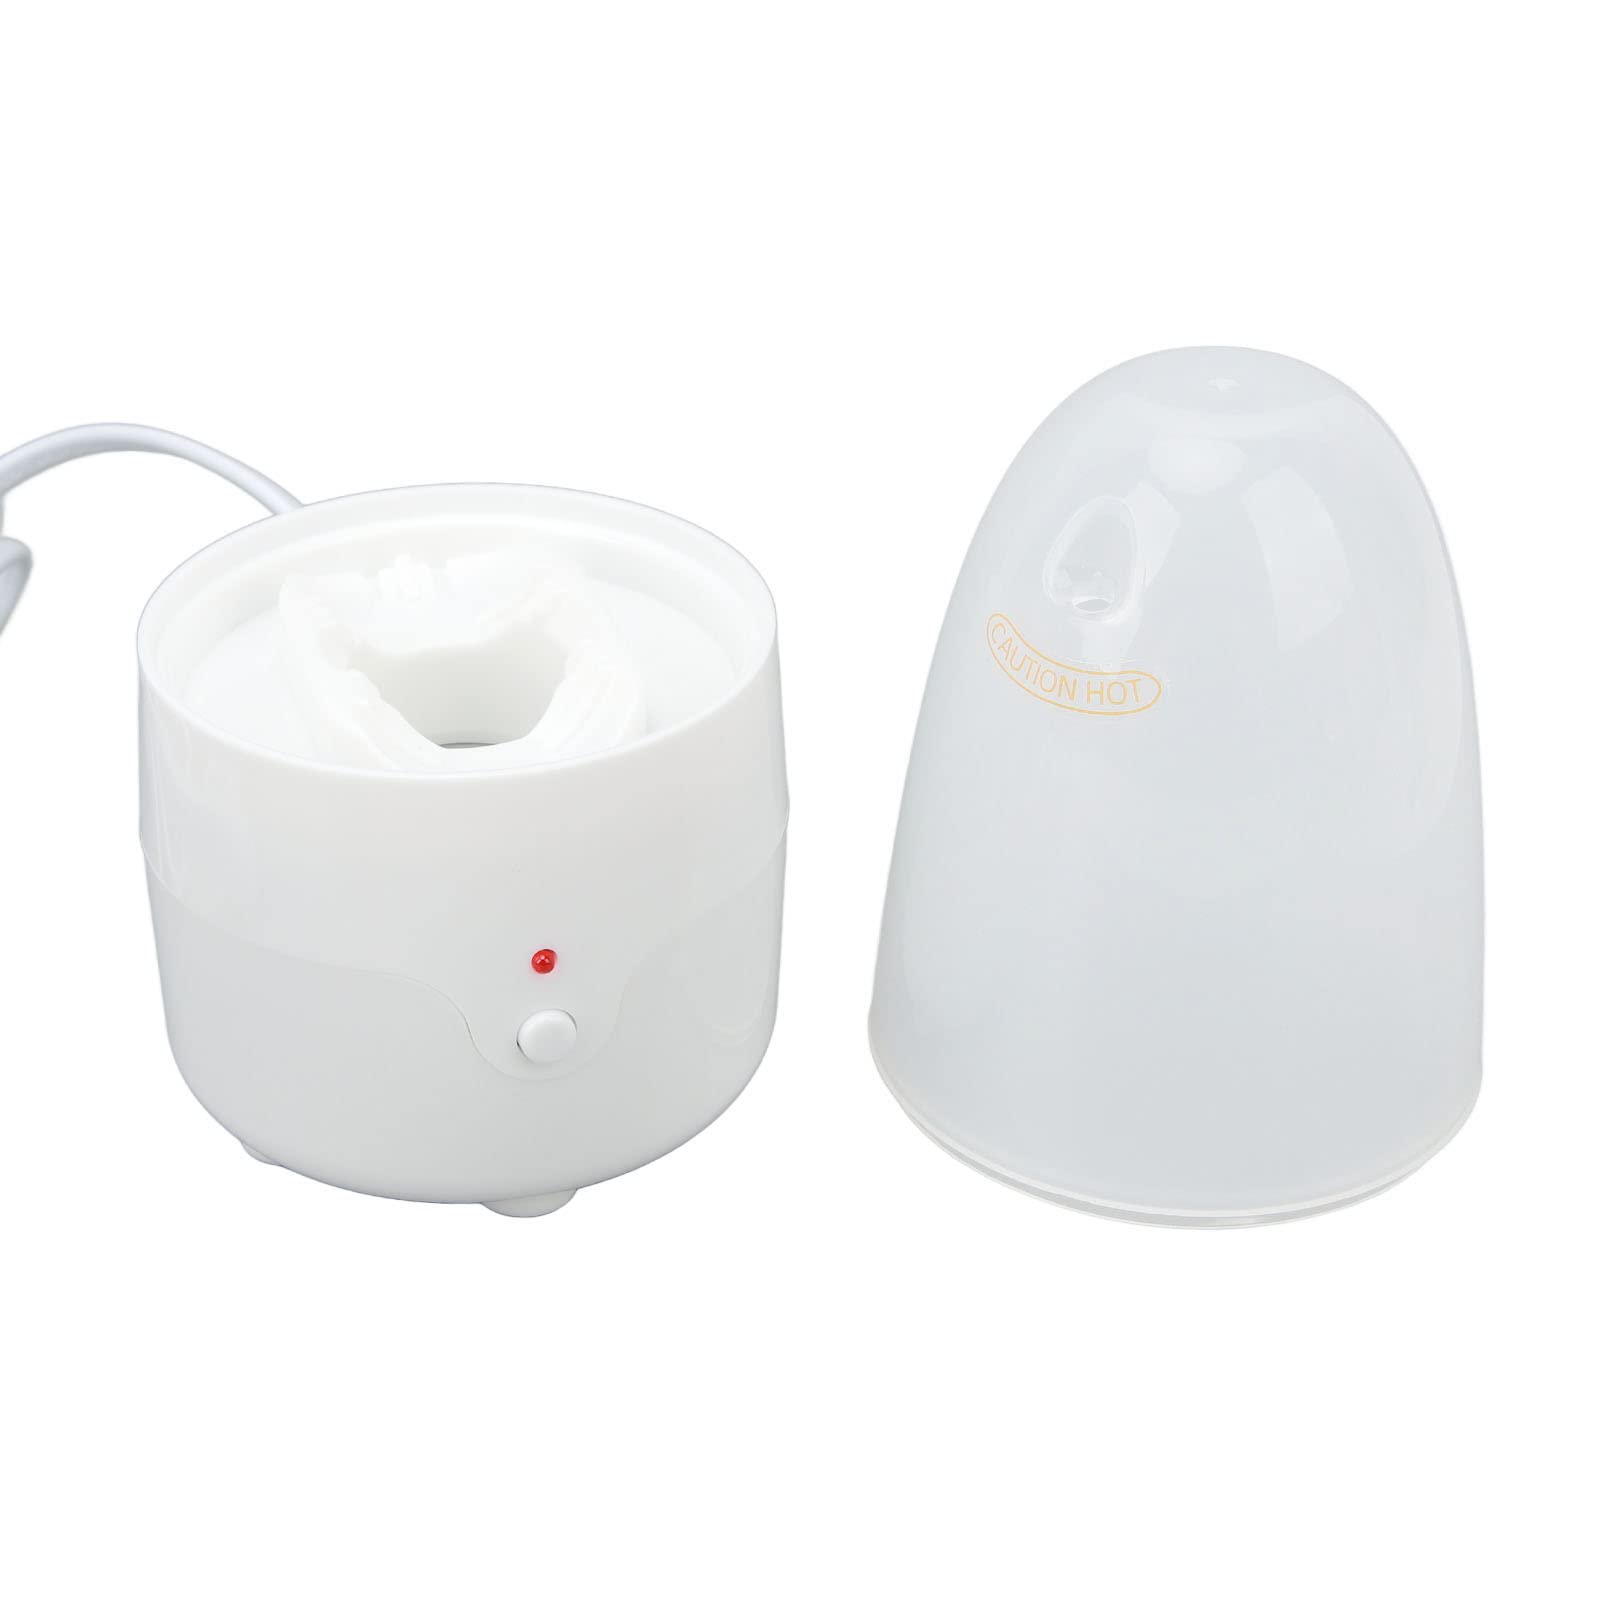 Menstruationstassen-Dampfgarer-Maschine, Periodentassen-Dampfgarer-Maschine, Kontrollleuchte, Hohe Temperatur für die Hygienepflege für Frauen (EU-Stecker)